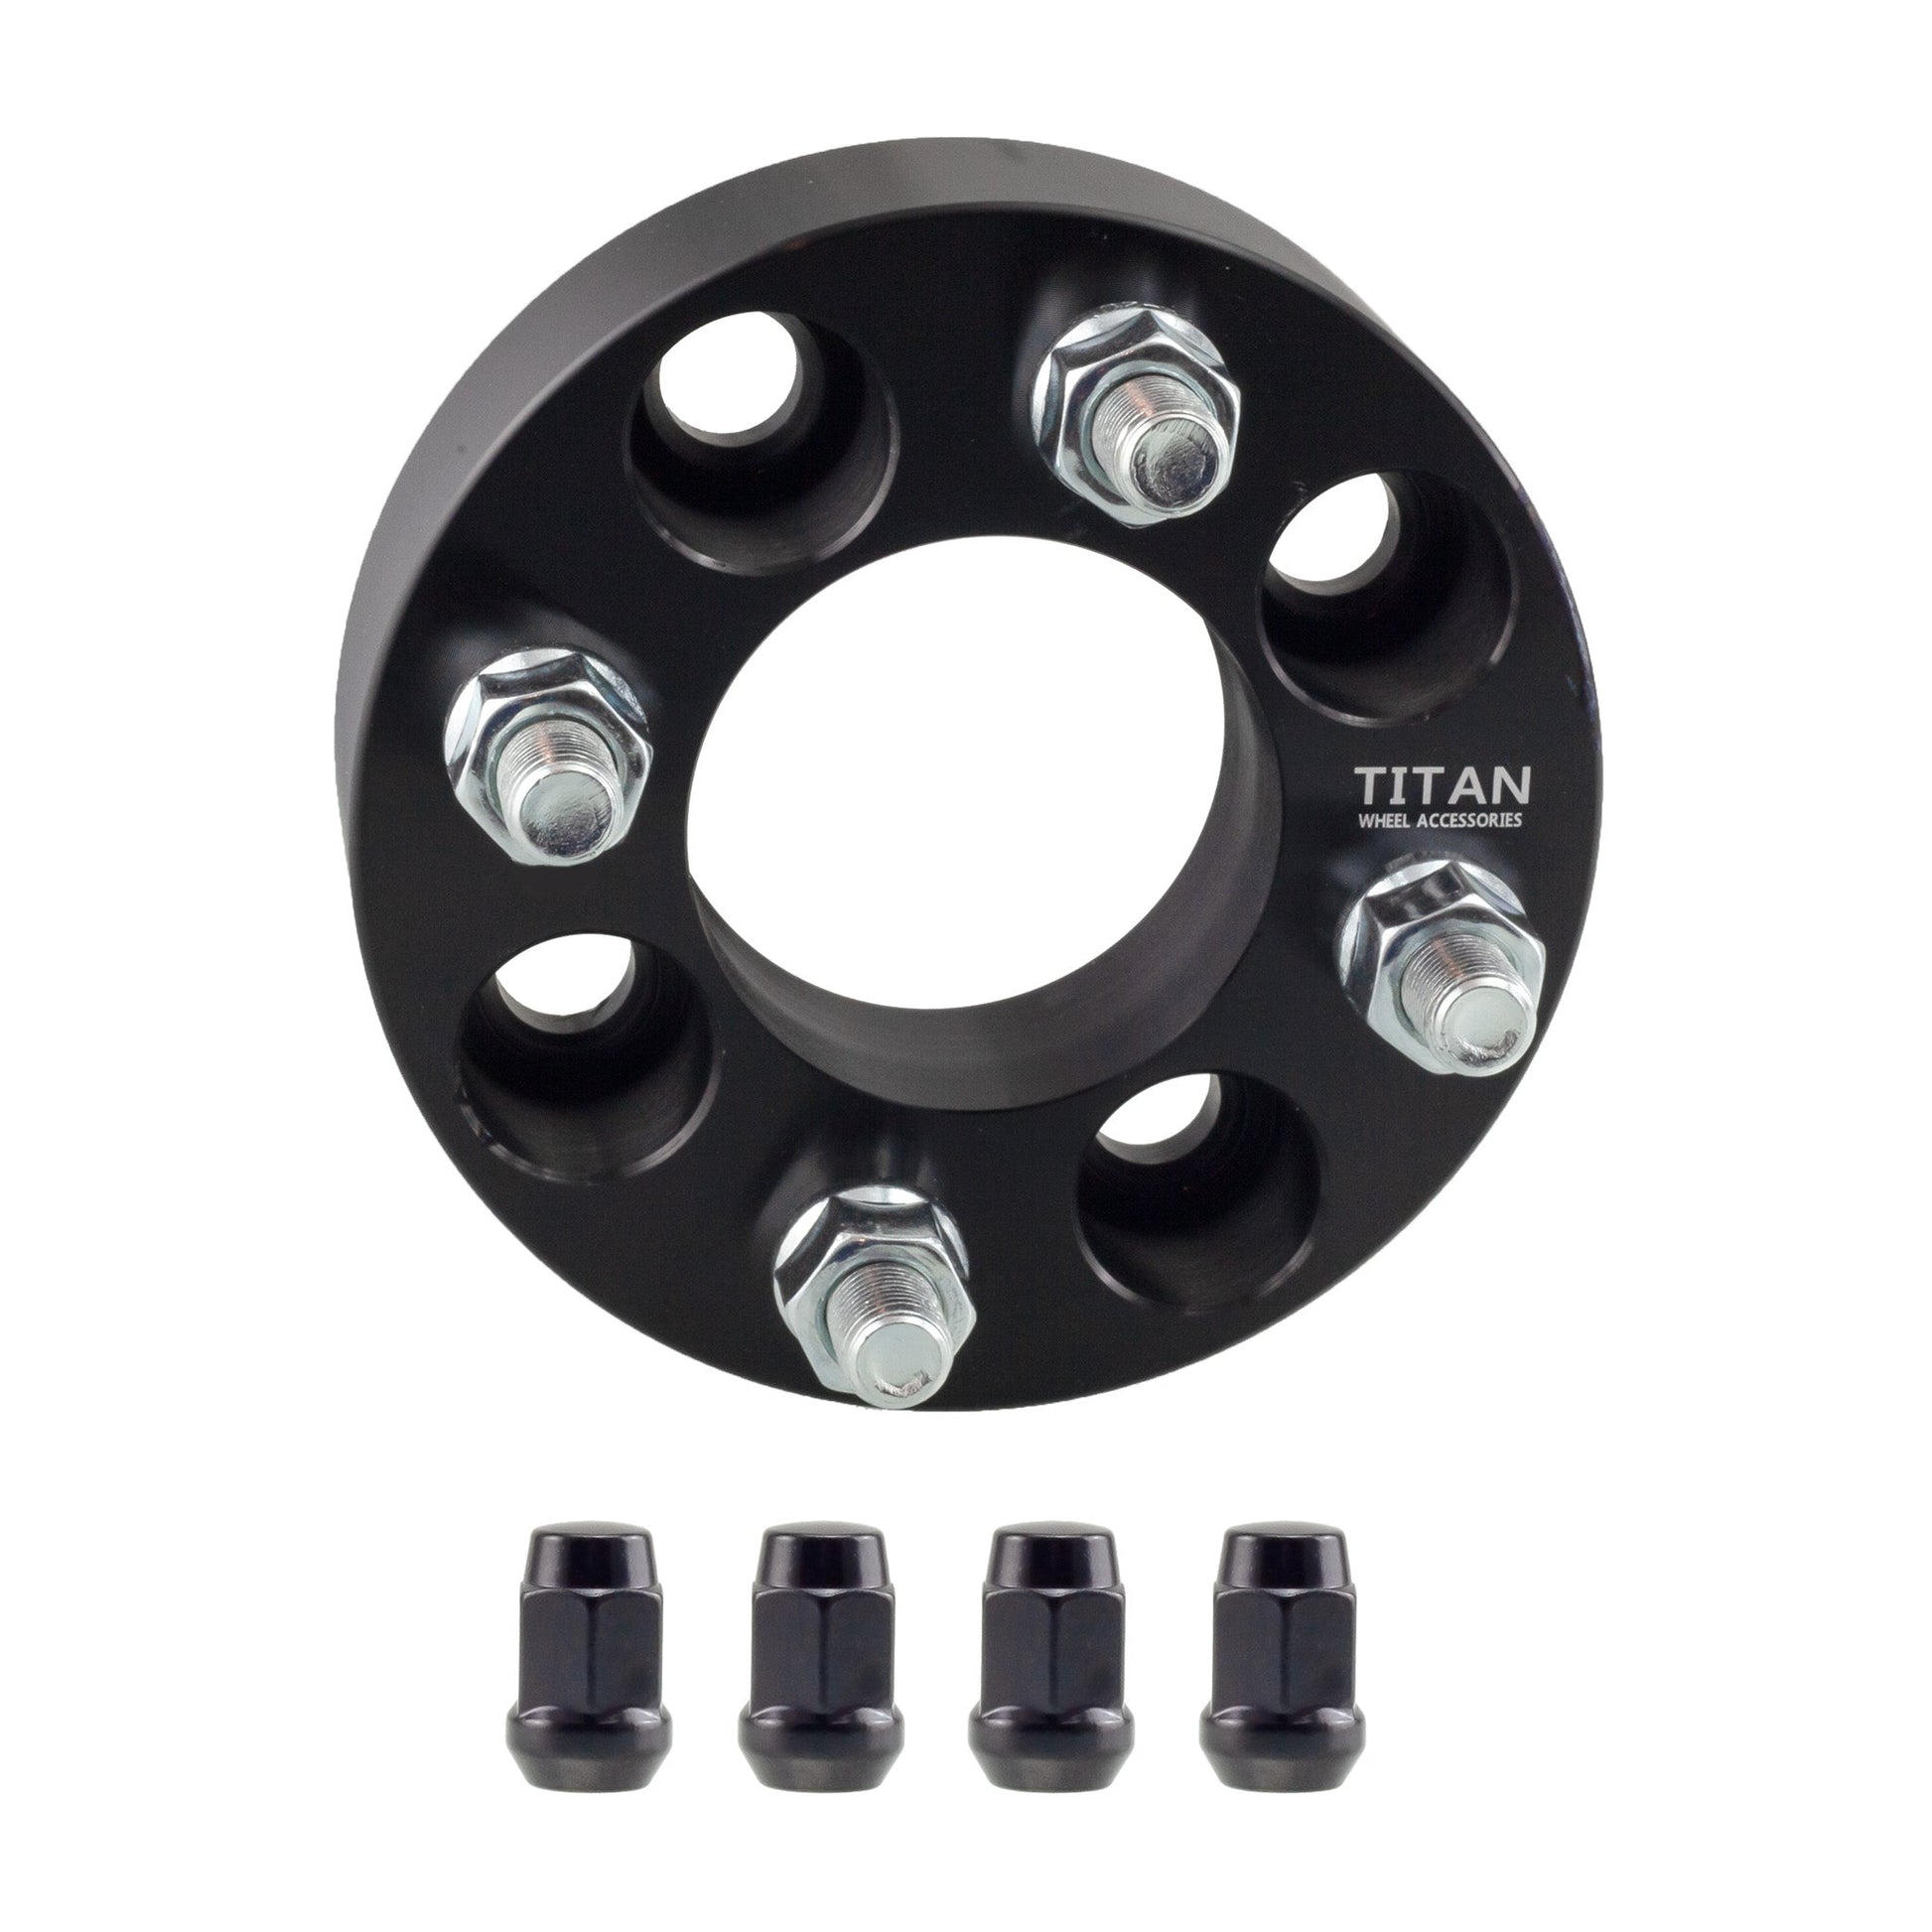 20mm Titan Wheel Spacers for Mazda Miata Scion xA xB Toyota MR2 Celica | 4x100 | 54.1 Hubcentric | 12x1.5 Studs | Titan Wheel Accessories